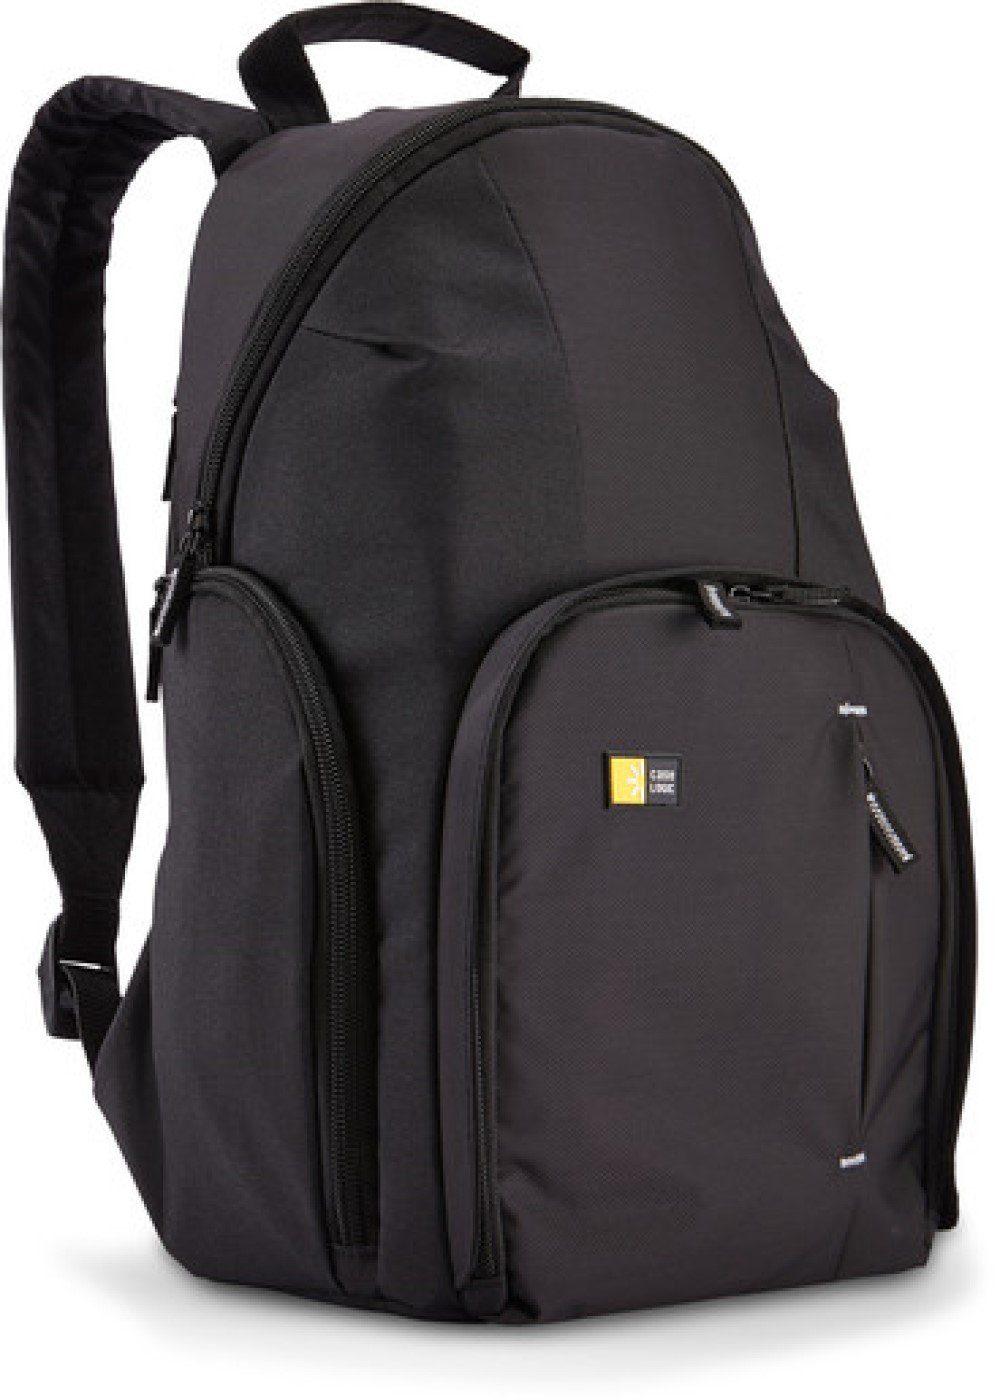 Case Logic Kameratasche »Kompakter Rucksack für Spiegelreflexkamera«,  Kamera Rucksack, Backpack, Spiegelreflex Zubehör, gepolsterte Rückwand,  kompakt, leicht, robust, schwarz